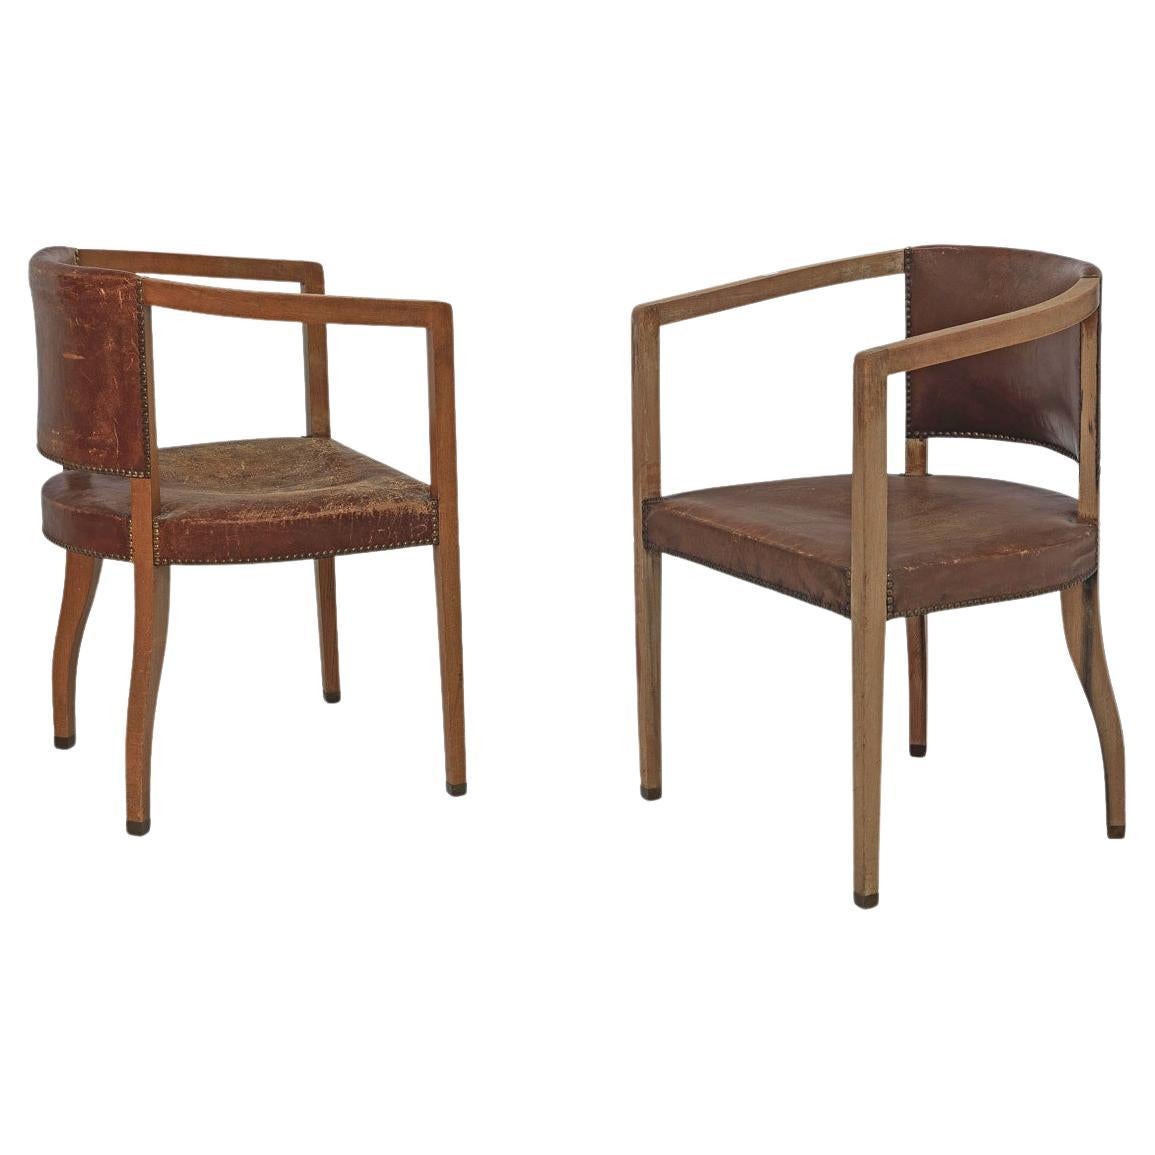 Paire de chaises originales Carl Witzmann House Bergmann Jugendstil Secession style